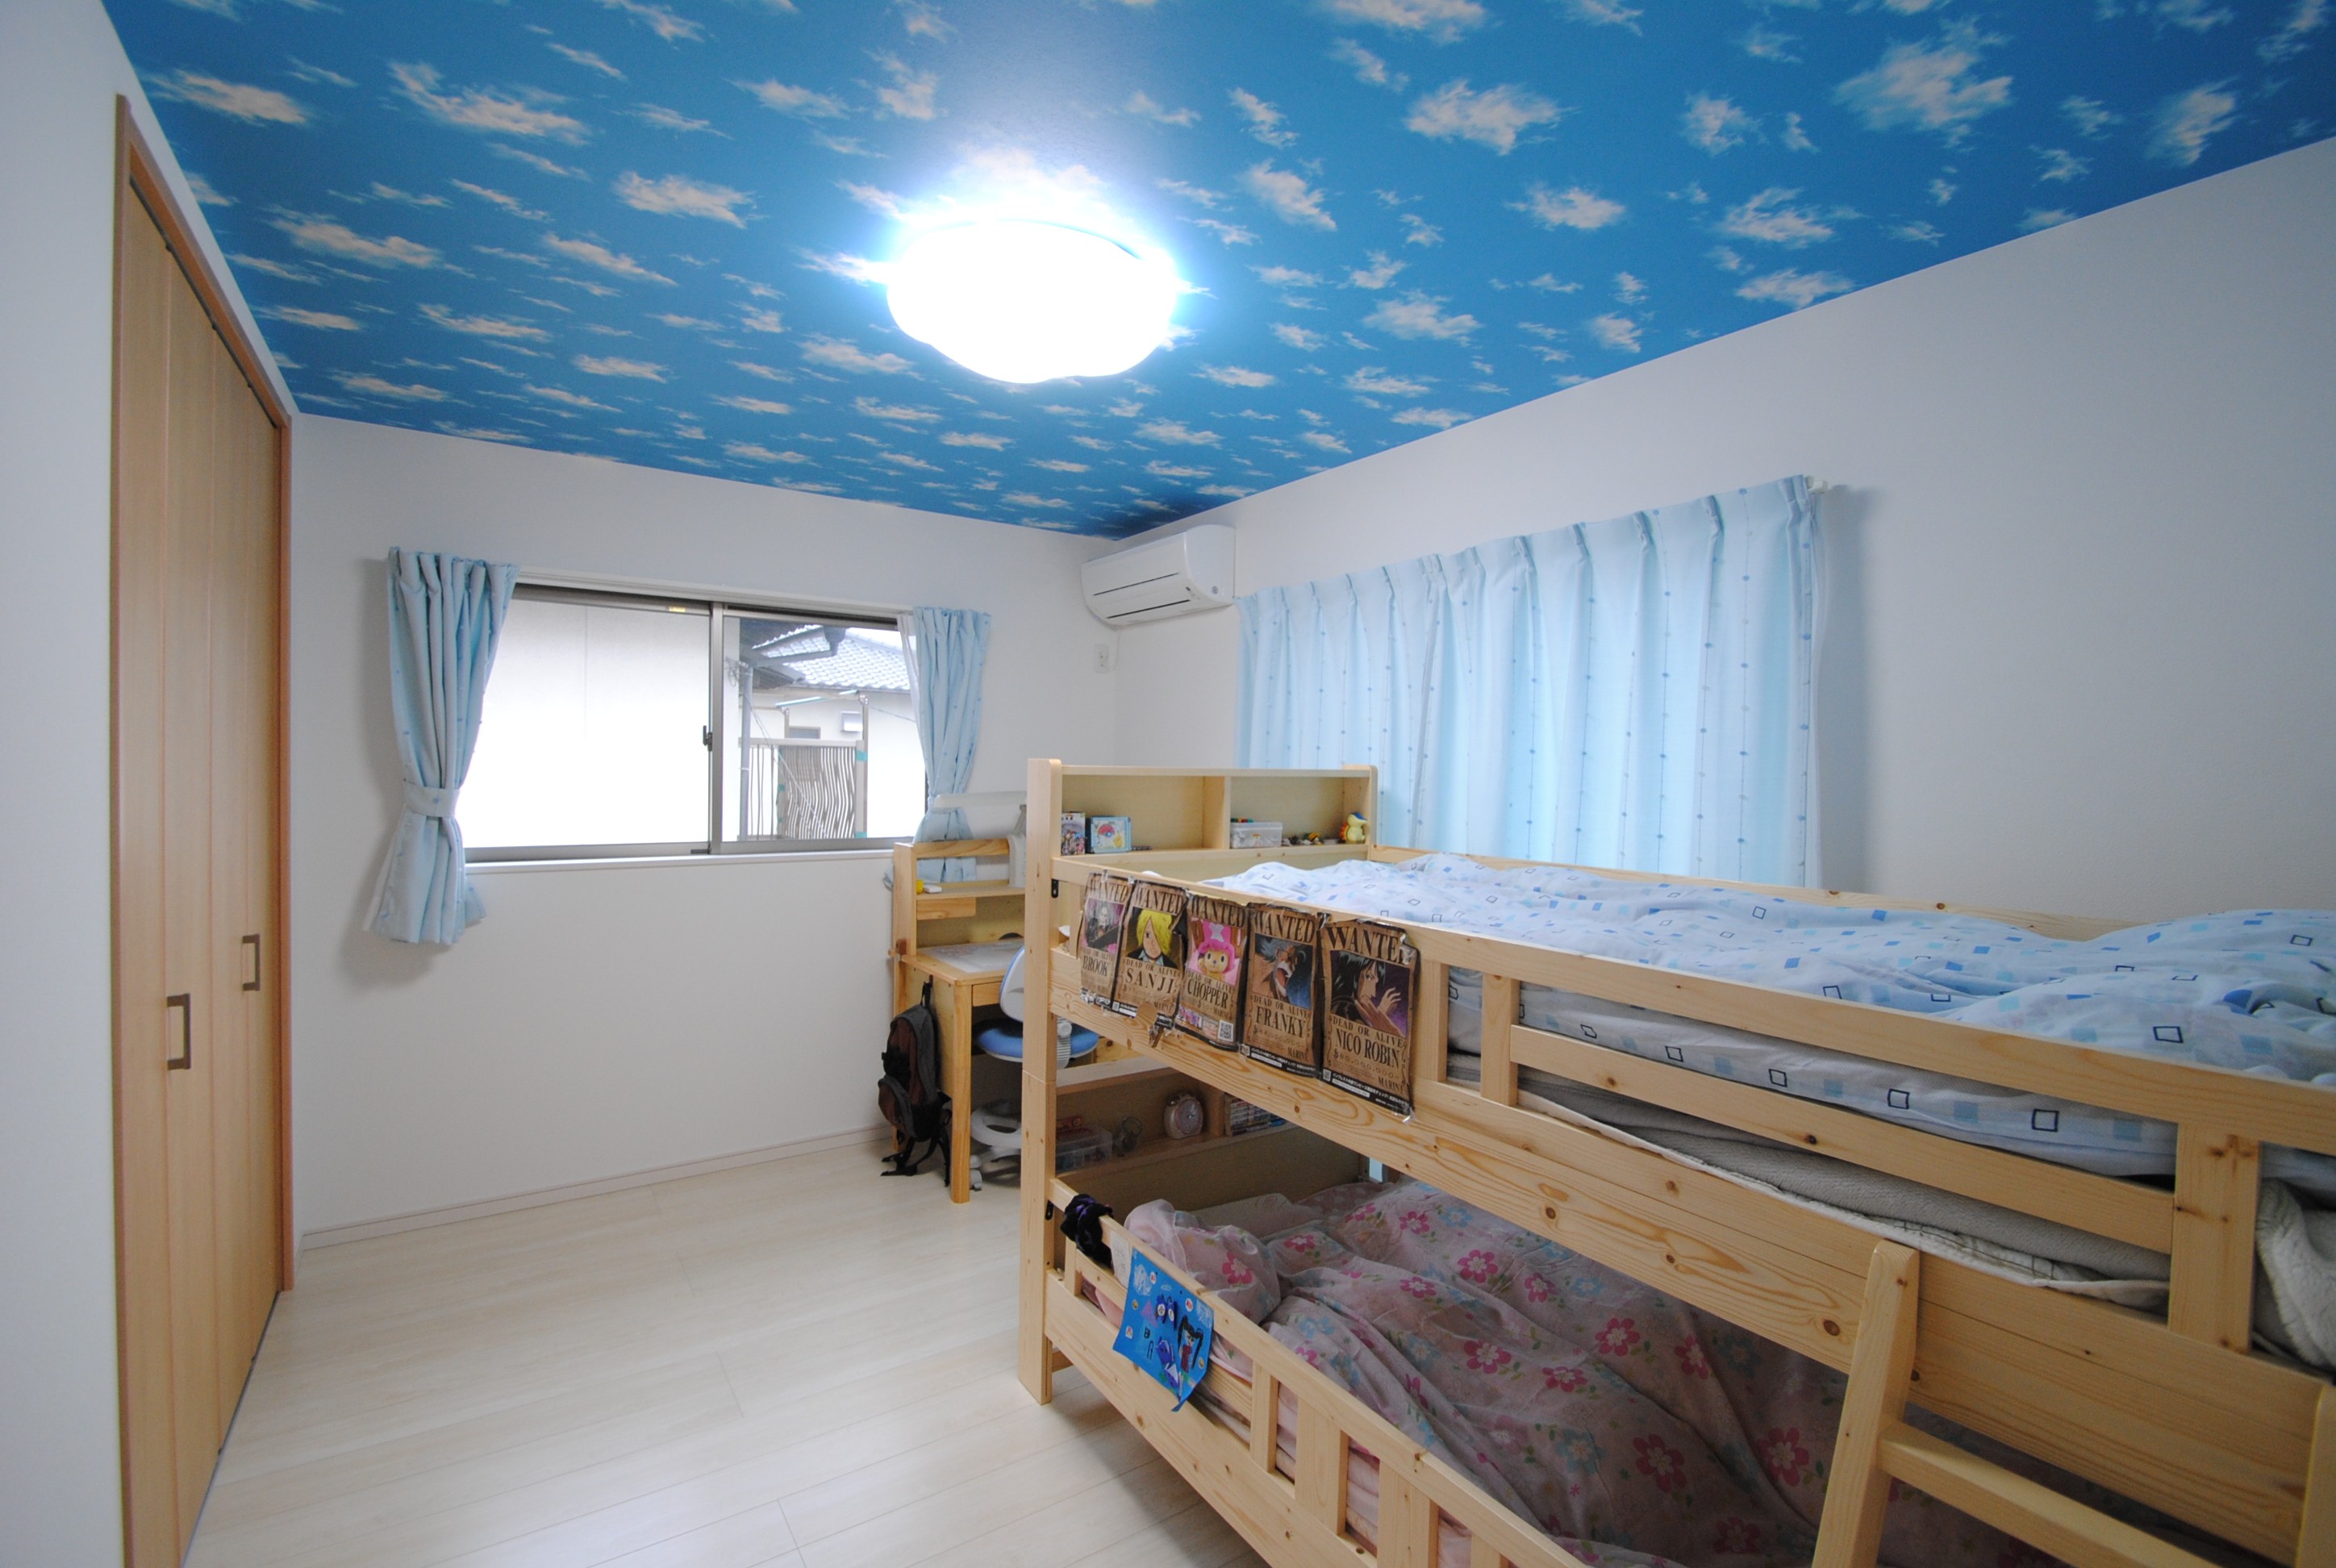 子ども部屋は元気がでる明るいトーンに。空色の天井も子どもの創造力を伸ばしそうだ